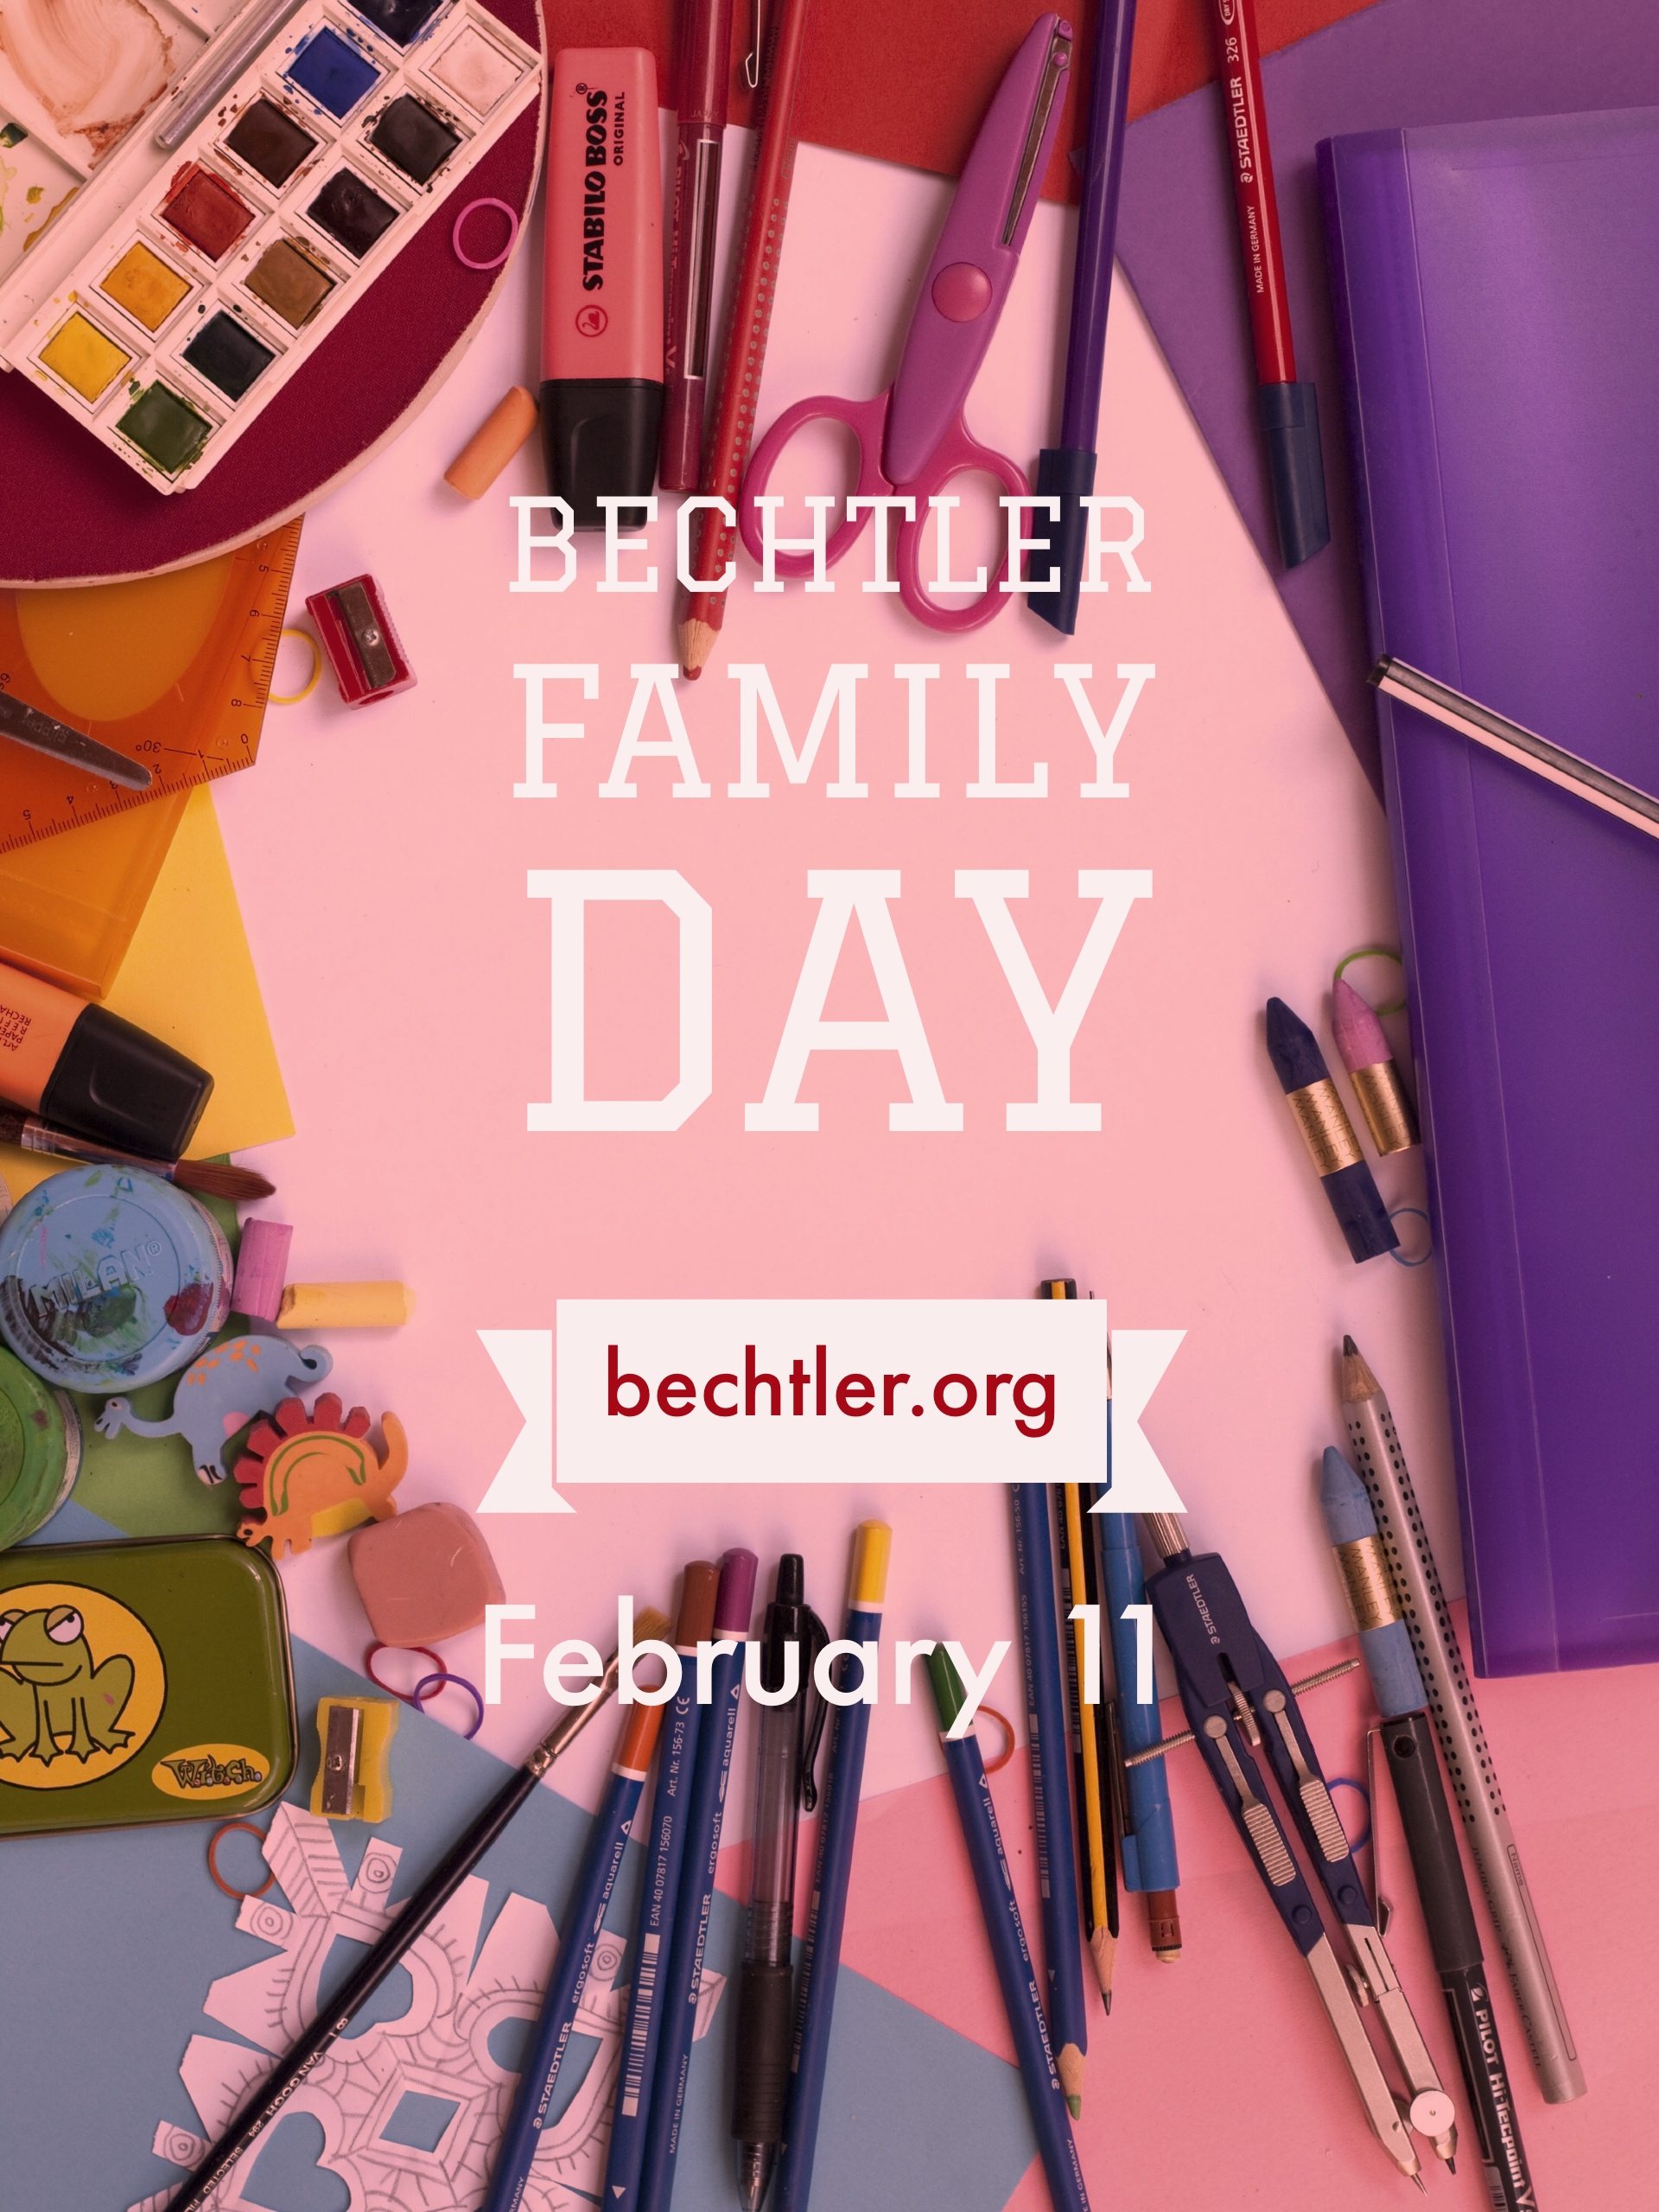 Bechtler Family Day